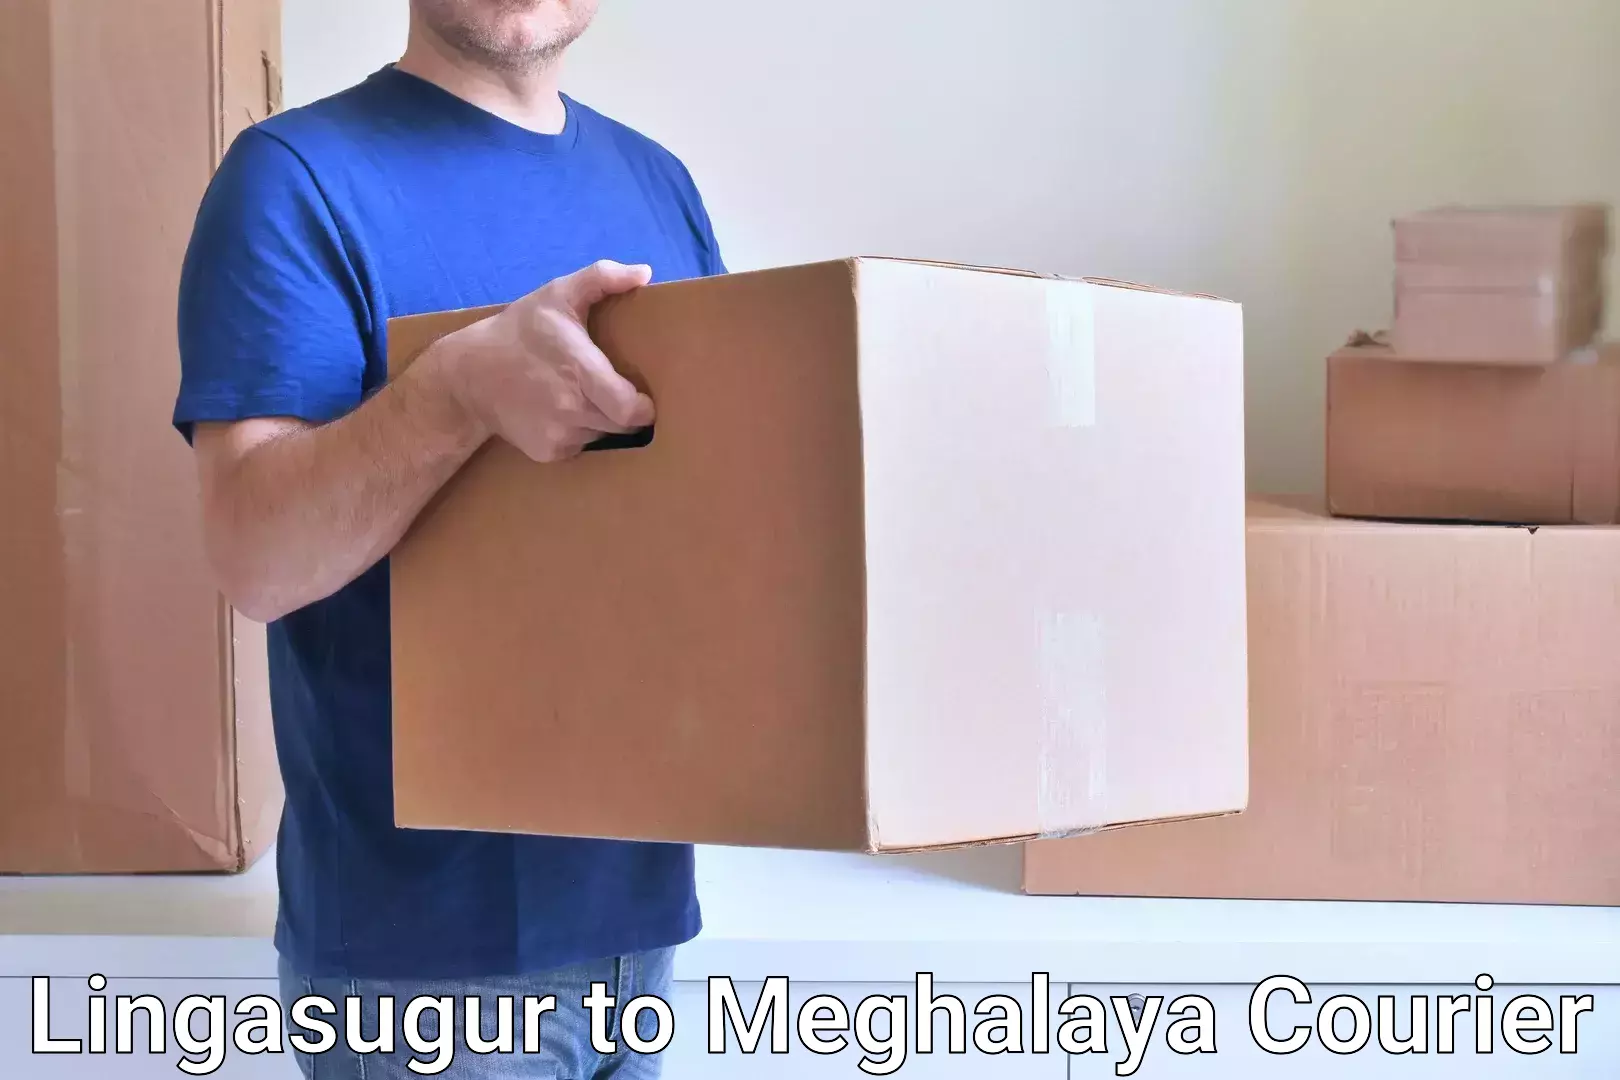 Courier service partnerships Lingasugur to Dkhiah West